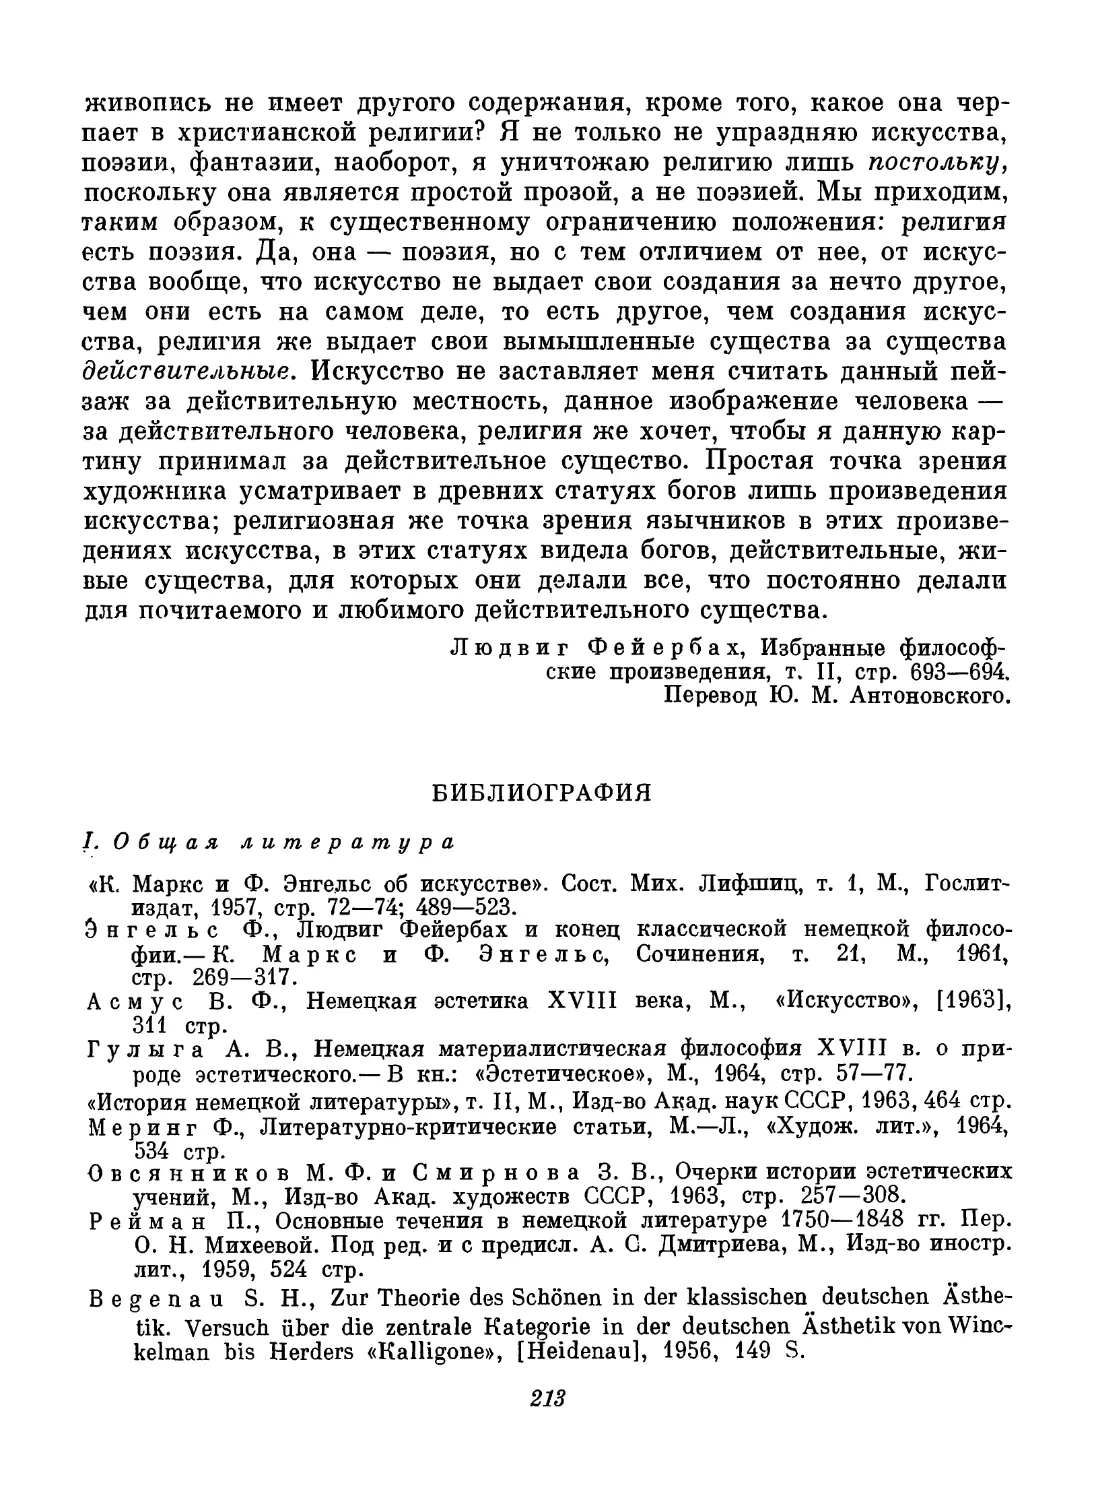 Библиография. Составители В. П. Шестаков и Ю. Н. Попов